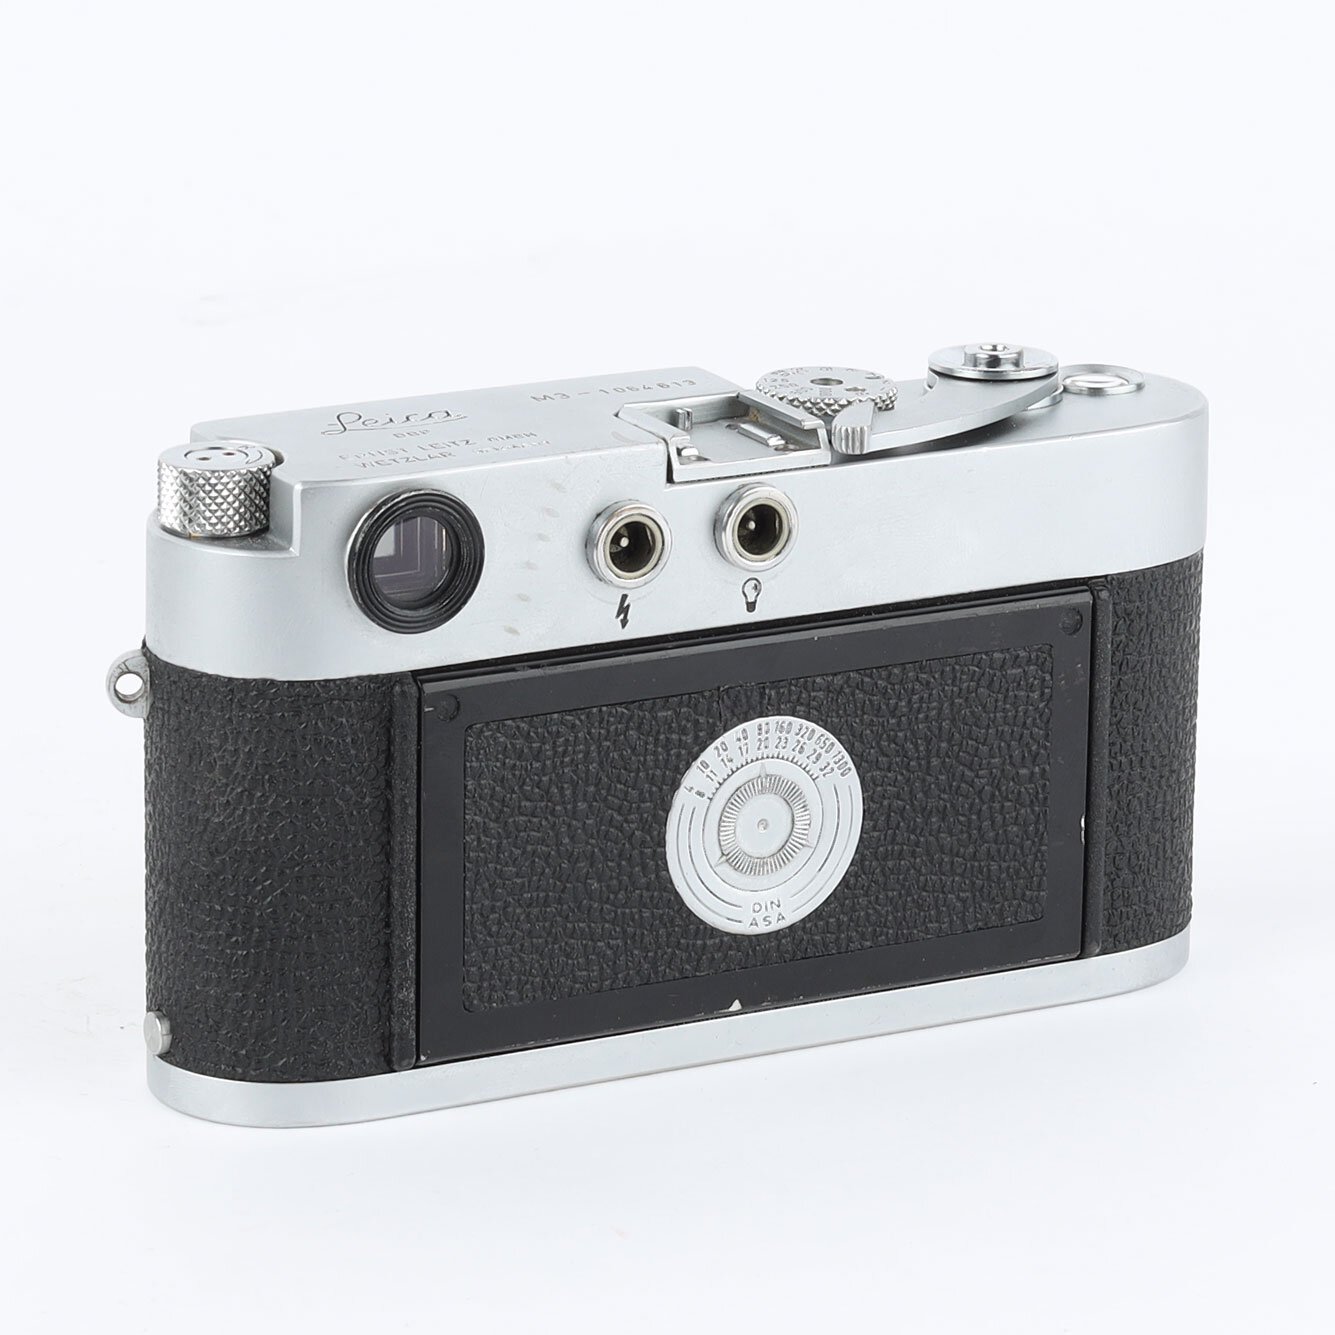 Leitz Leica M3